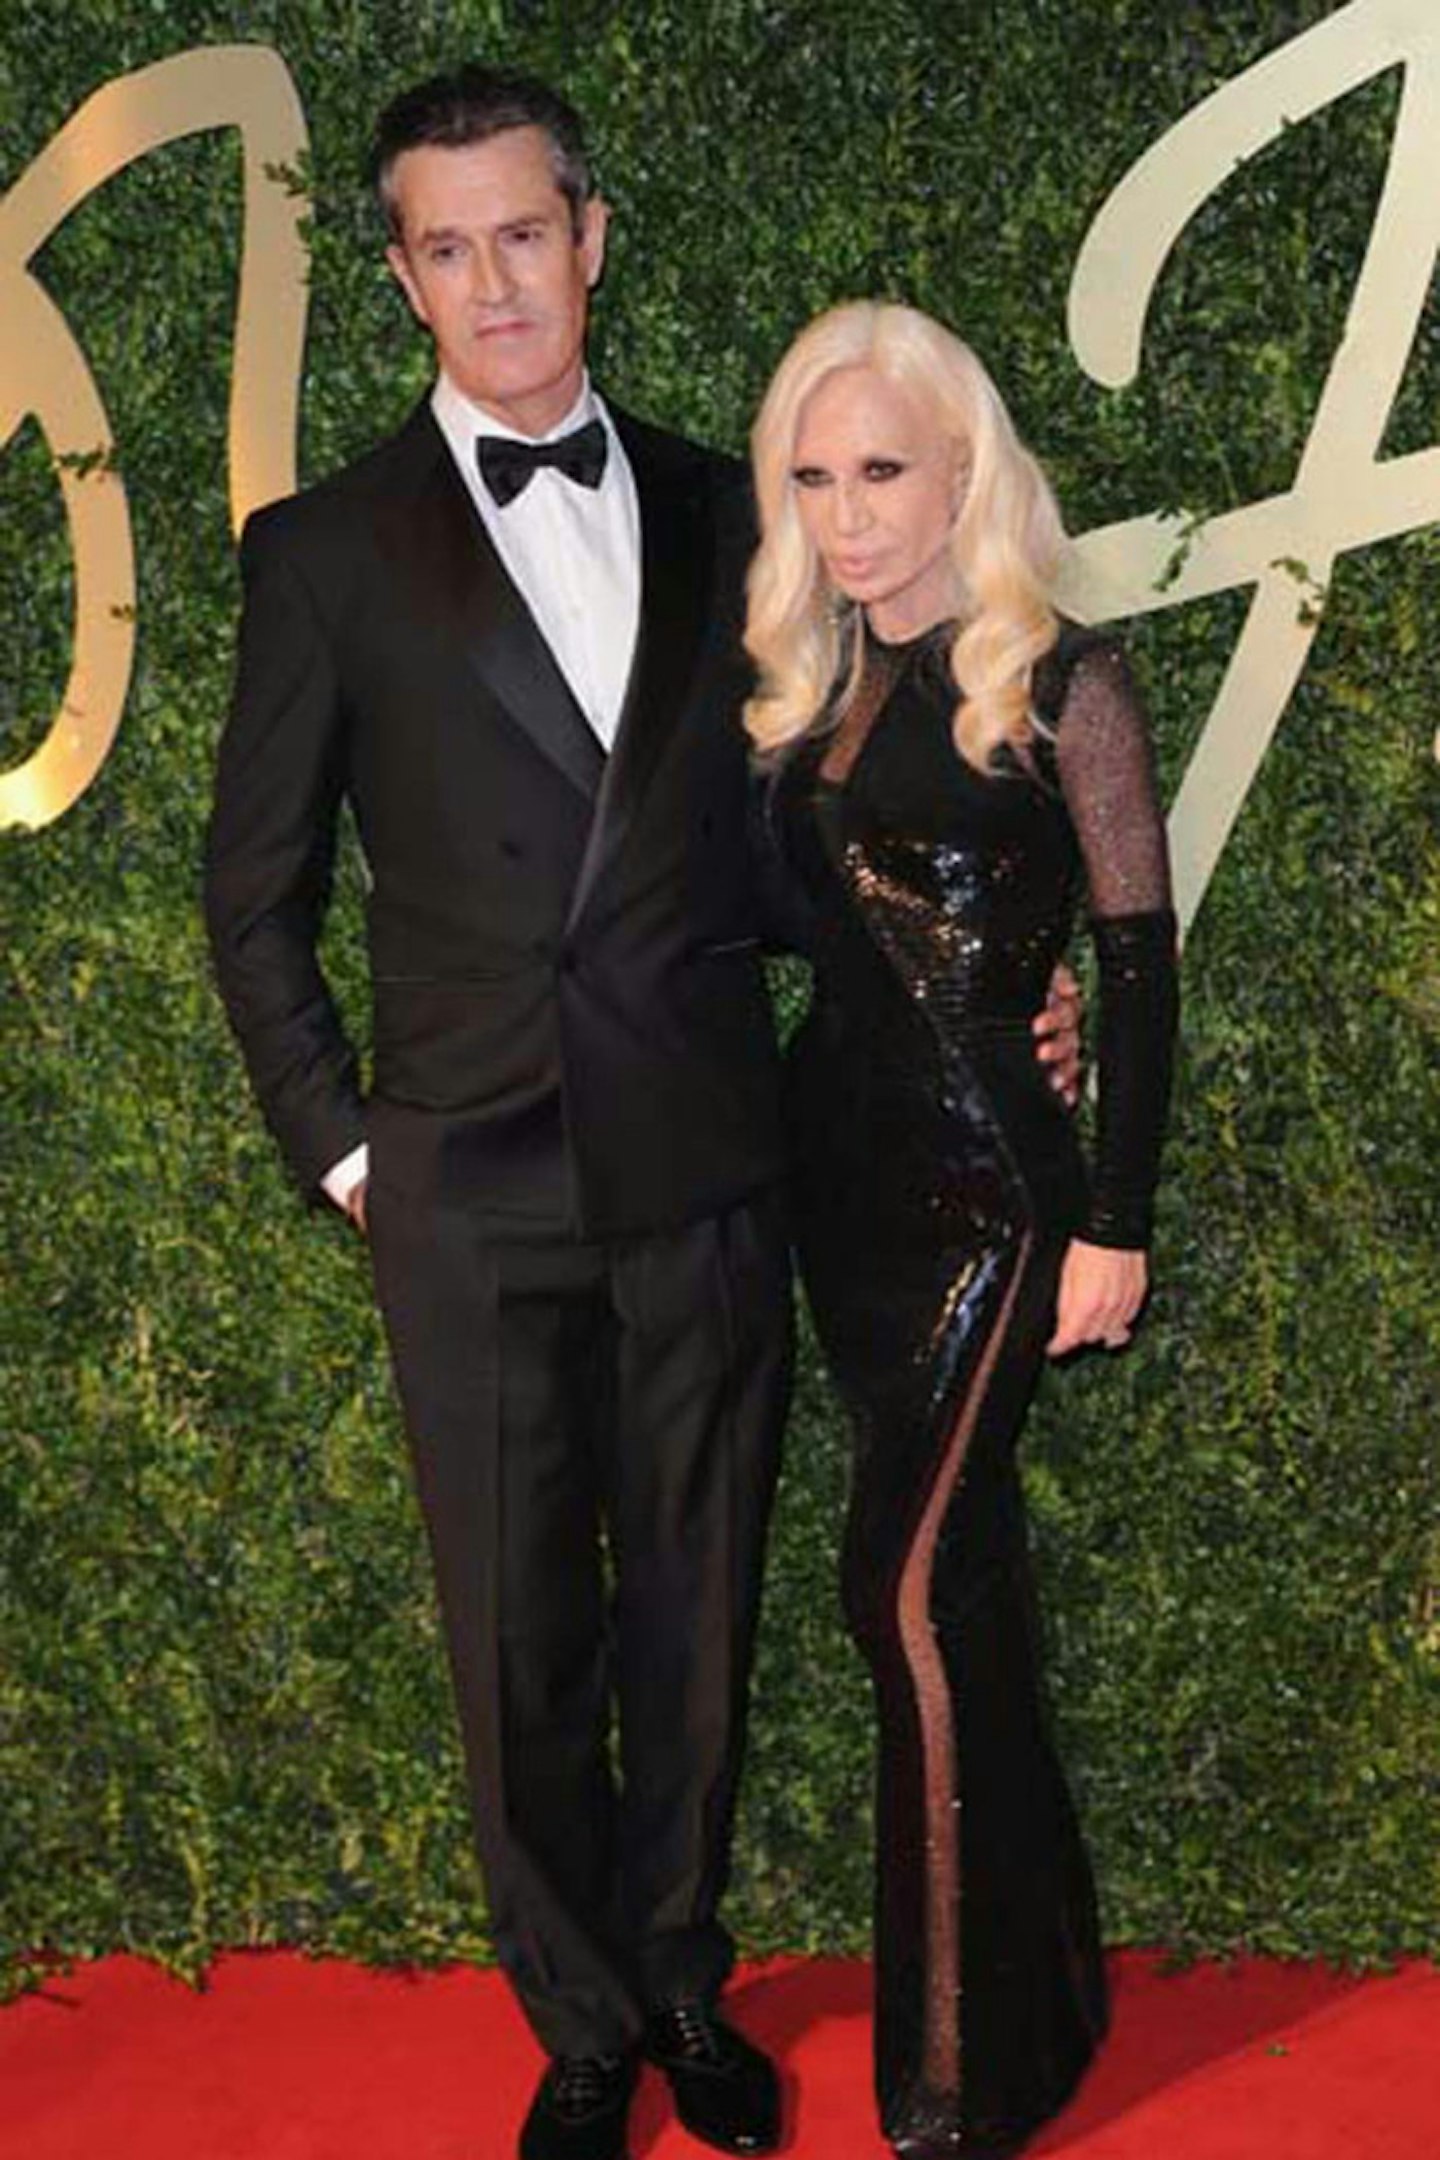 Rupert Everett and Donatella Versace